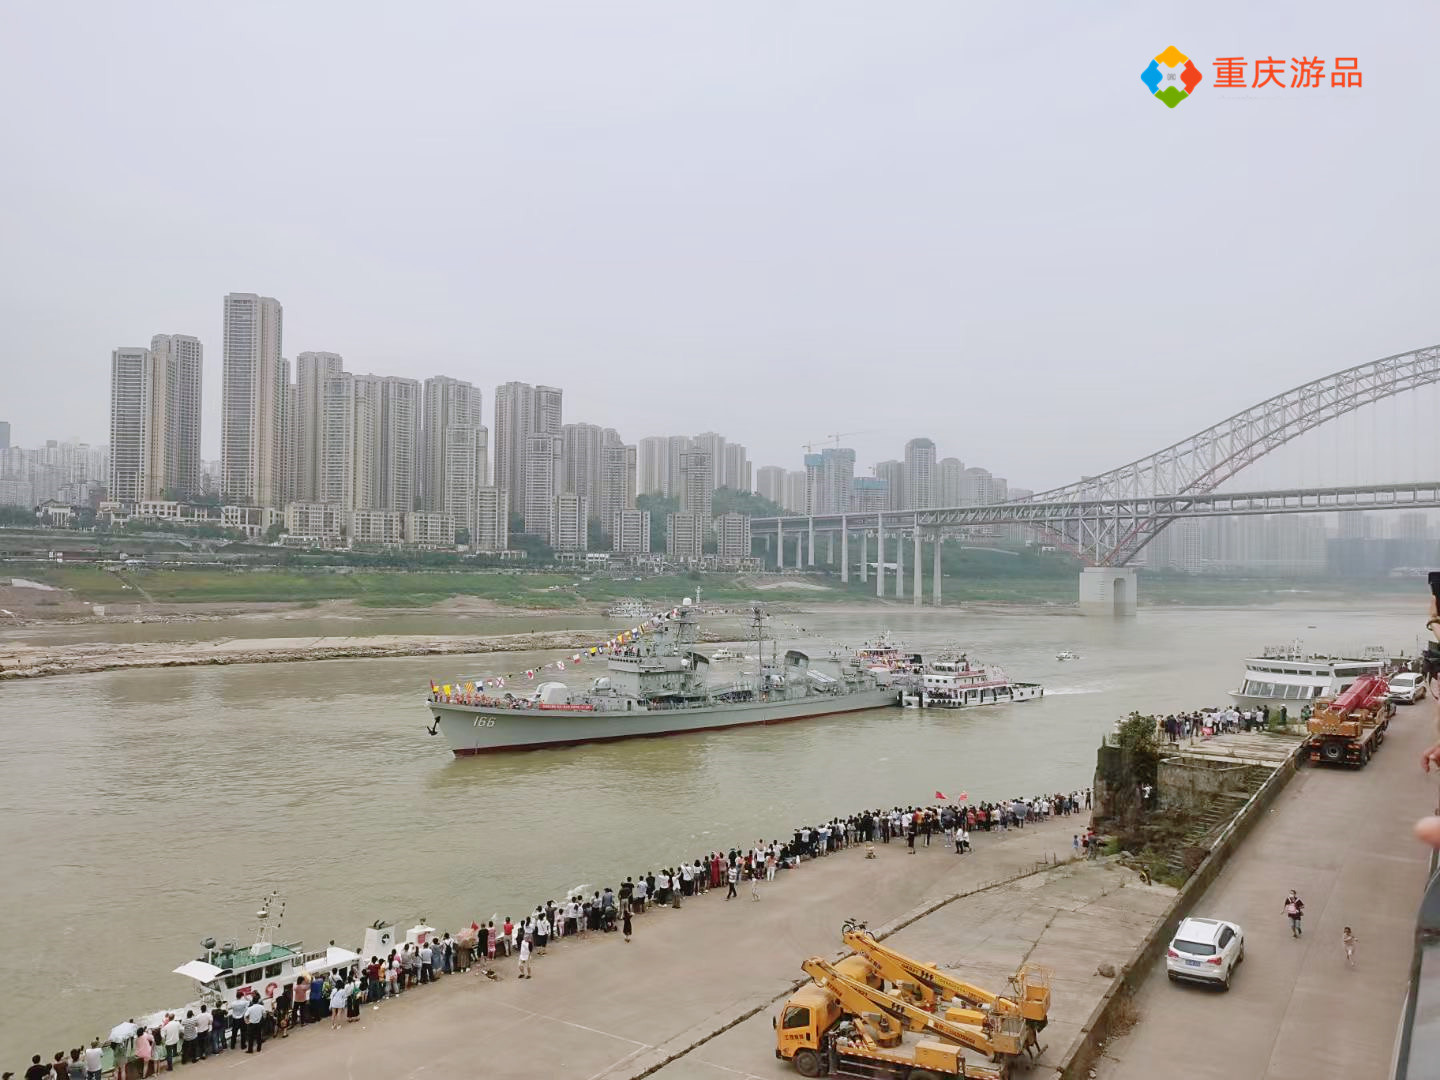 刷屏朋友圈，引发重庆市民围观，166舰陈列展开放，详细攻略来了